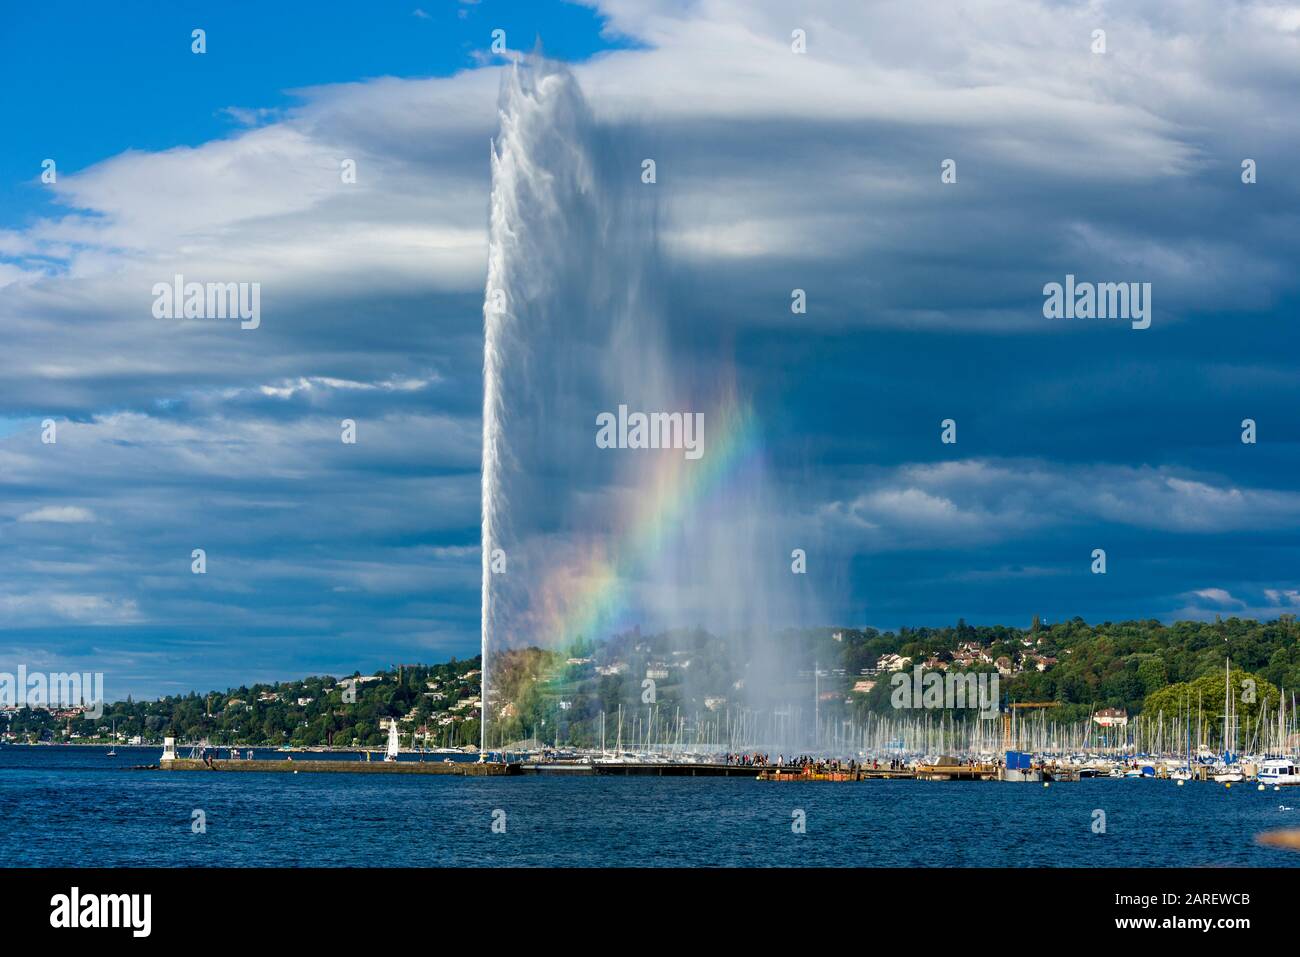 Schöner Blick auf den Wasserstrahlbrunnen mit Regenbogen im Genfersee,  Schweiz Stockfotografie - Alamy